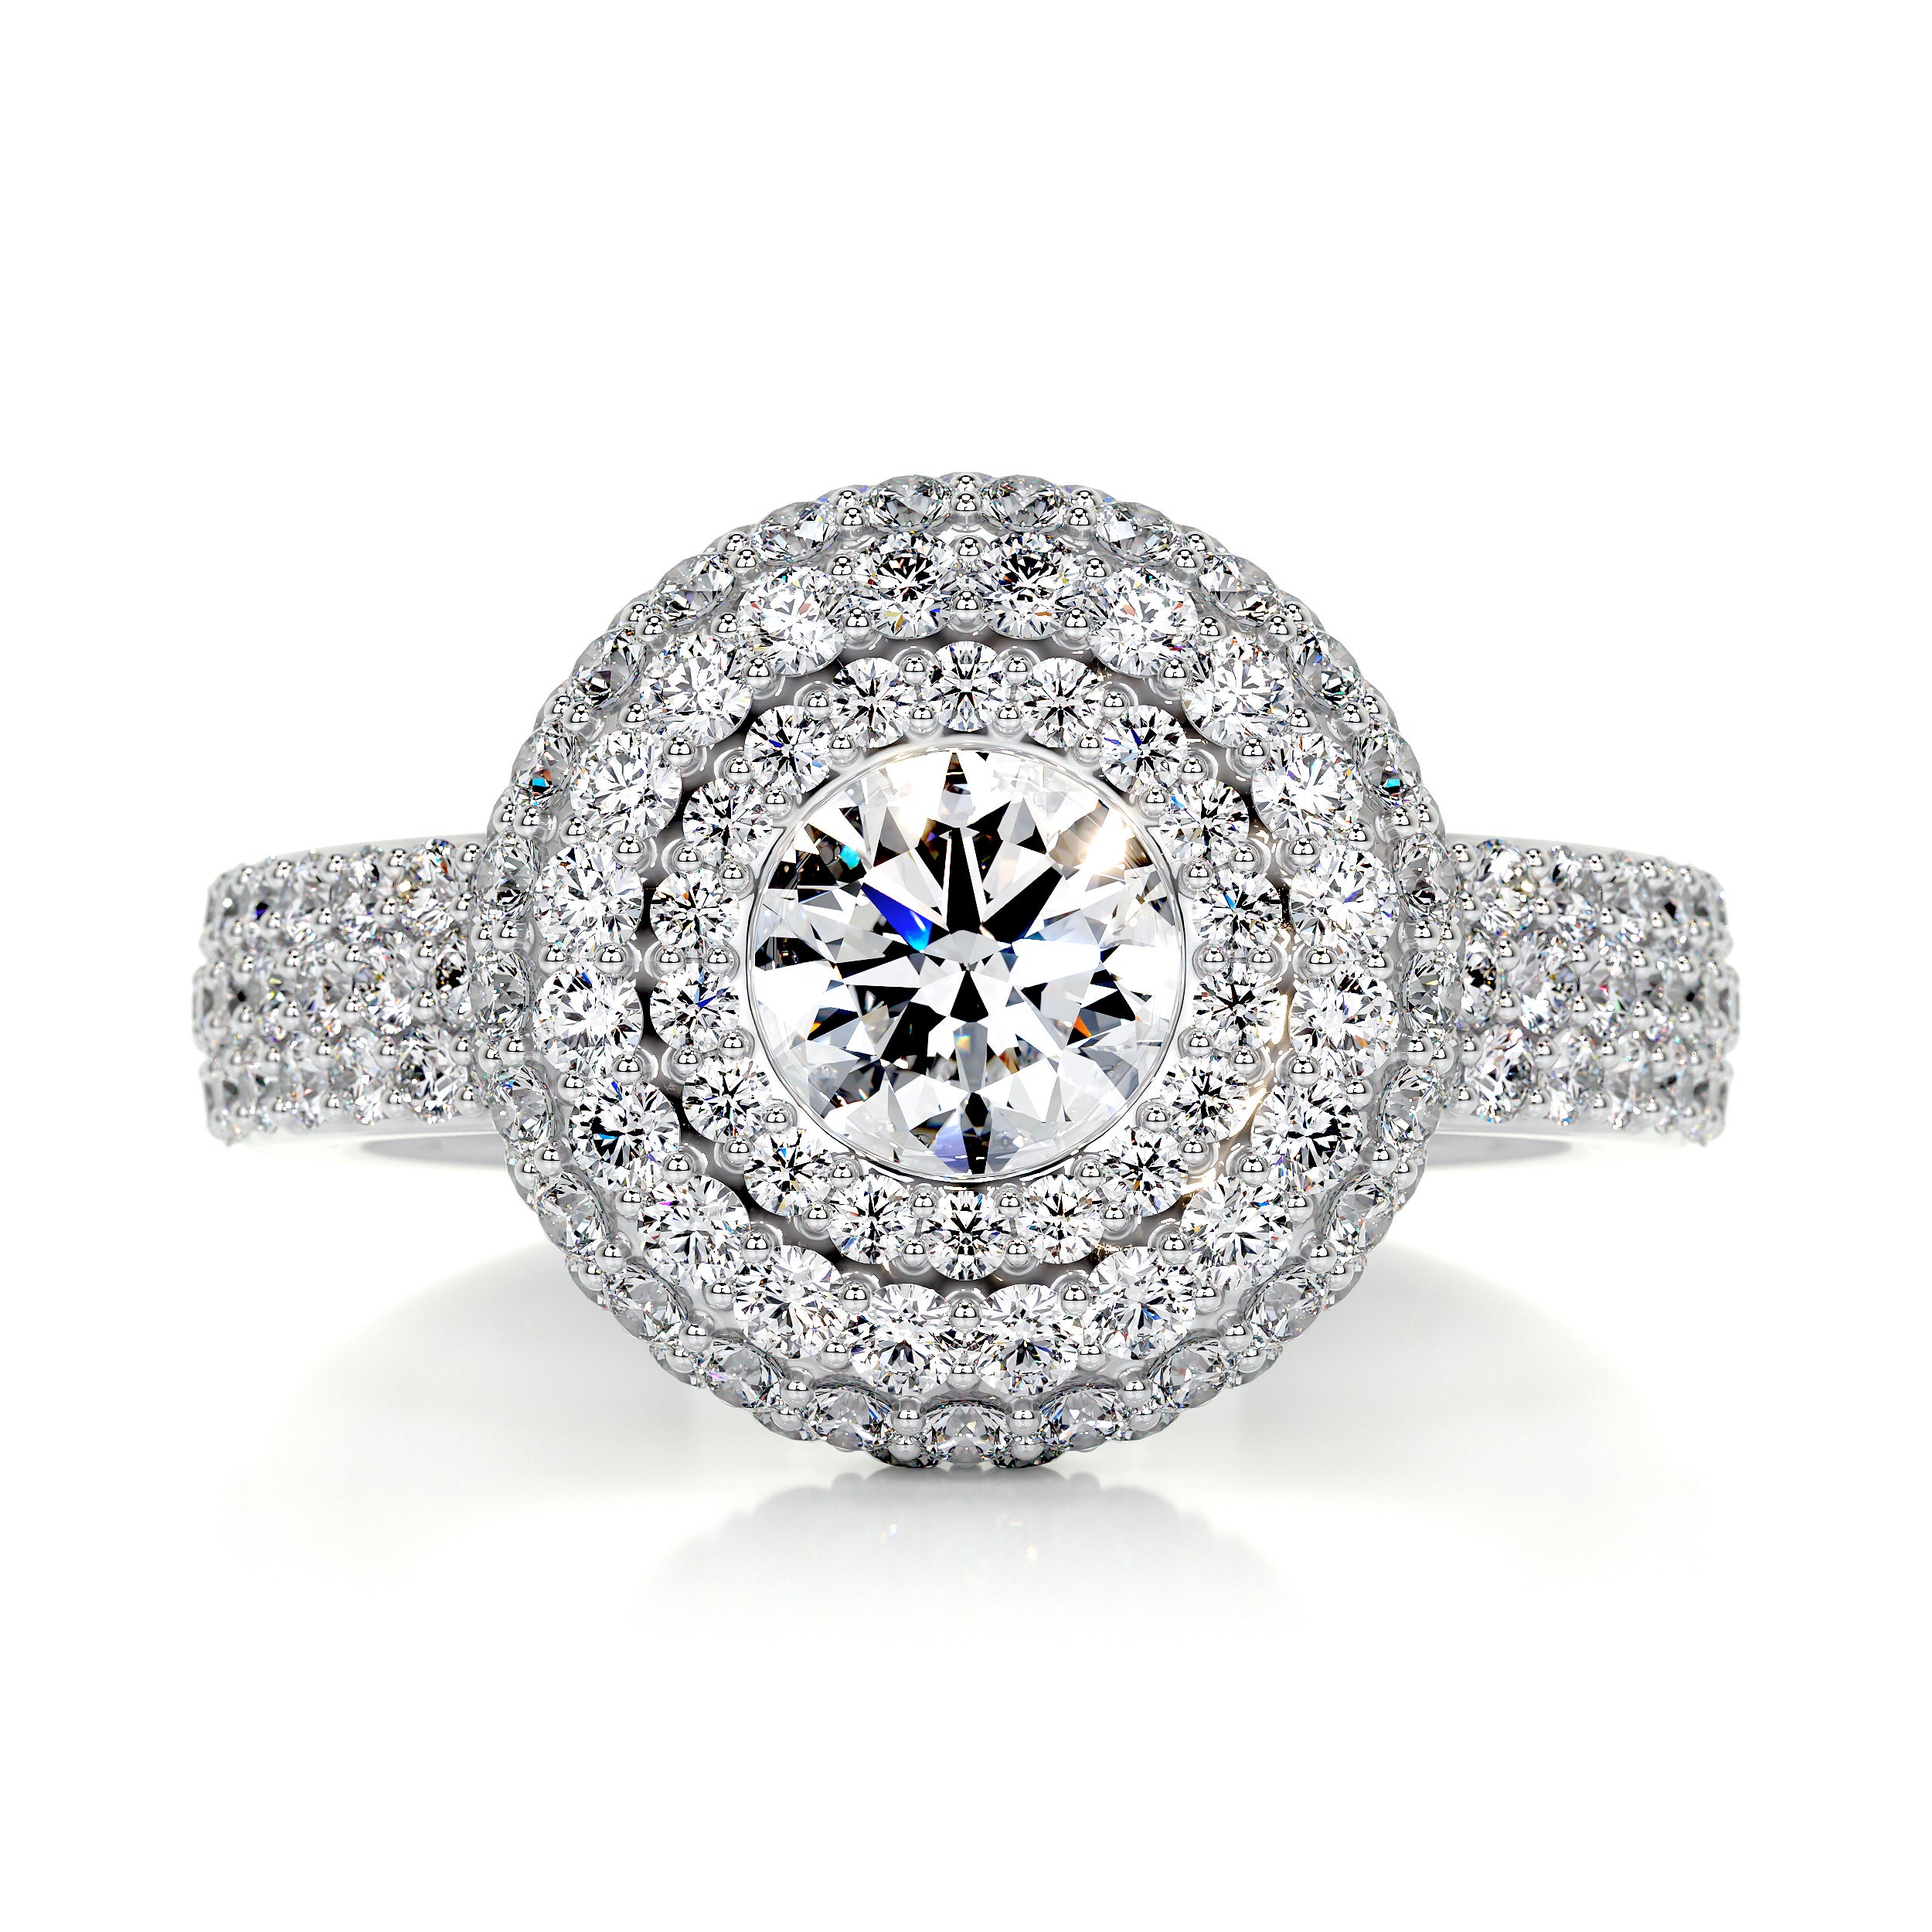 Reagan Diamond Engagement Ring   (2.25 Carat) -18K White Gold